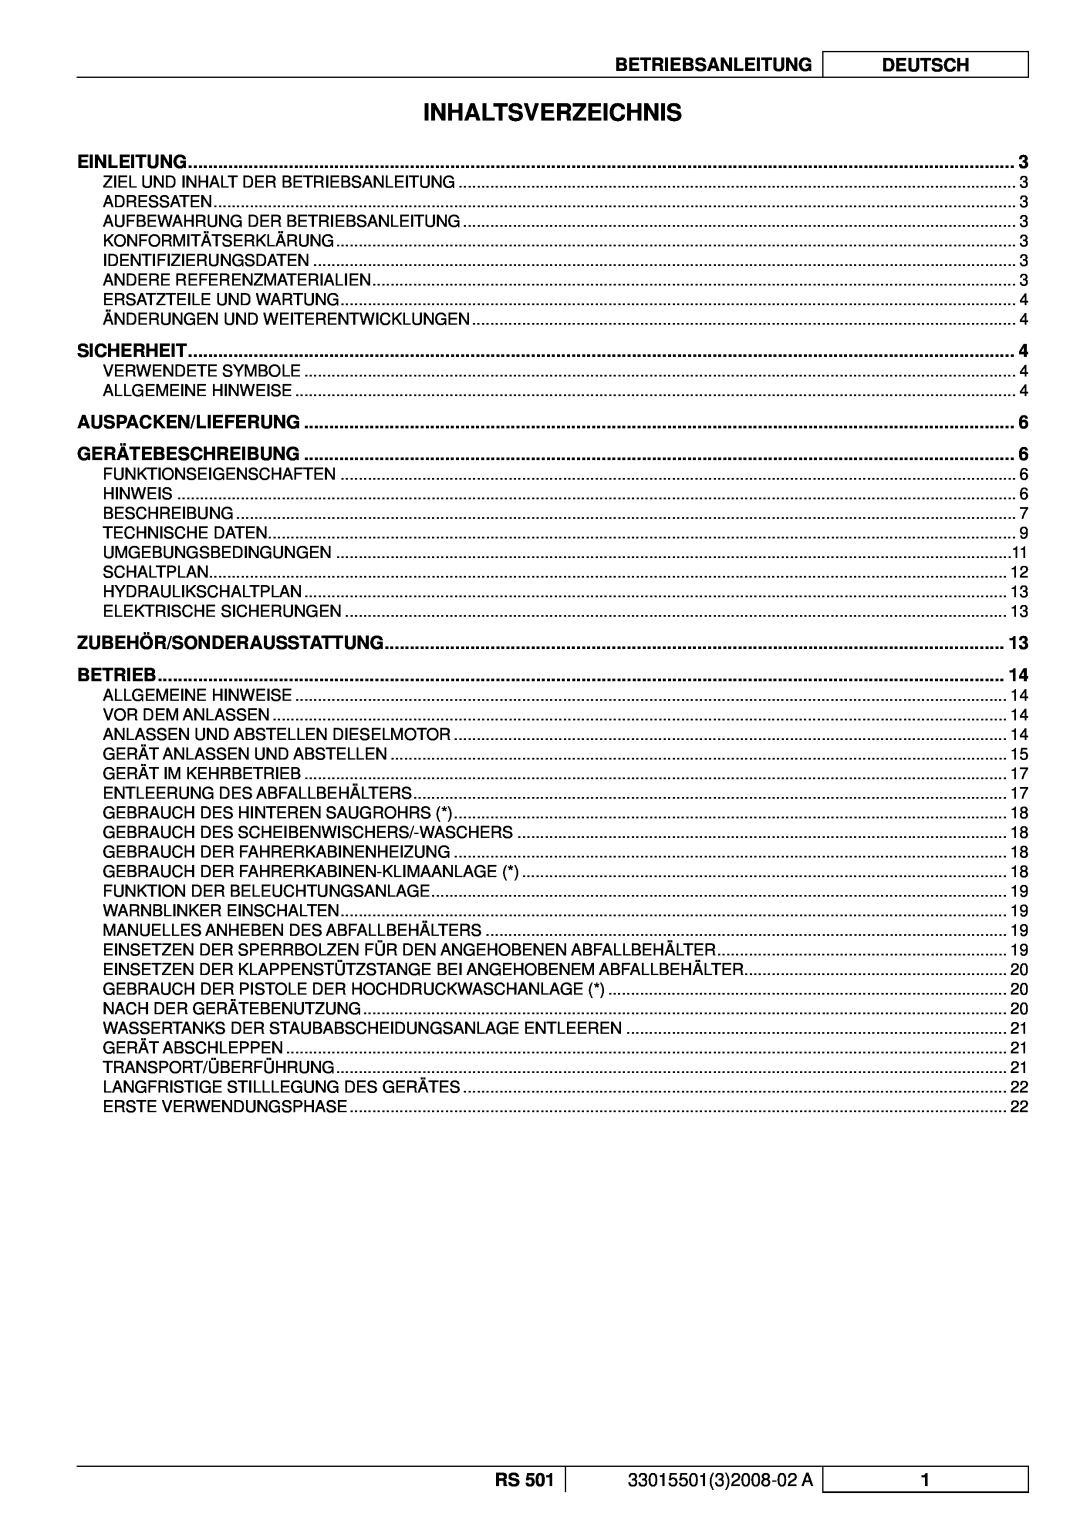 Nilfisk-ALTO RS 501 manuel dutilisation Inhaltsverzeichnis, Betriebsanleitung, Deutsch 